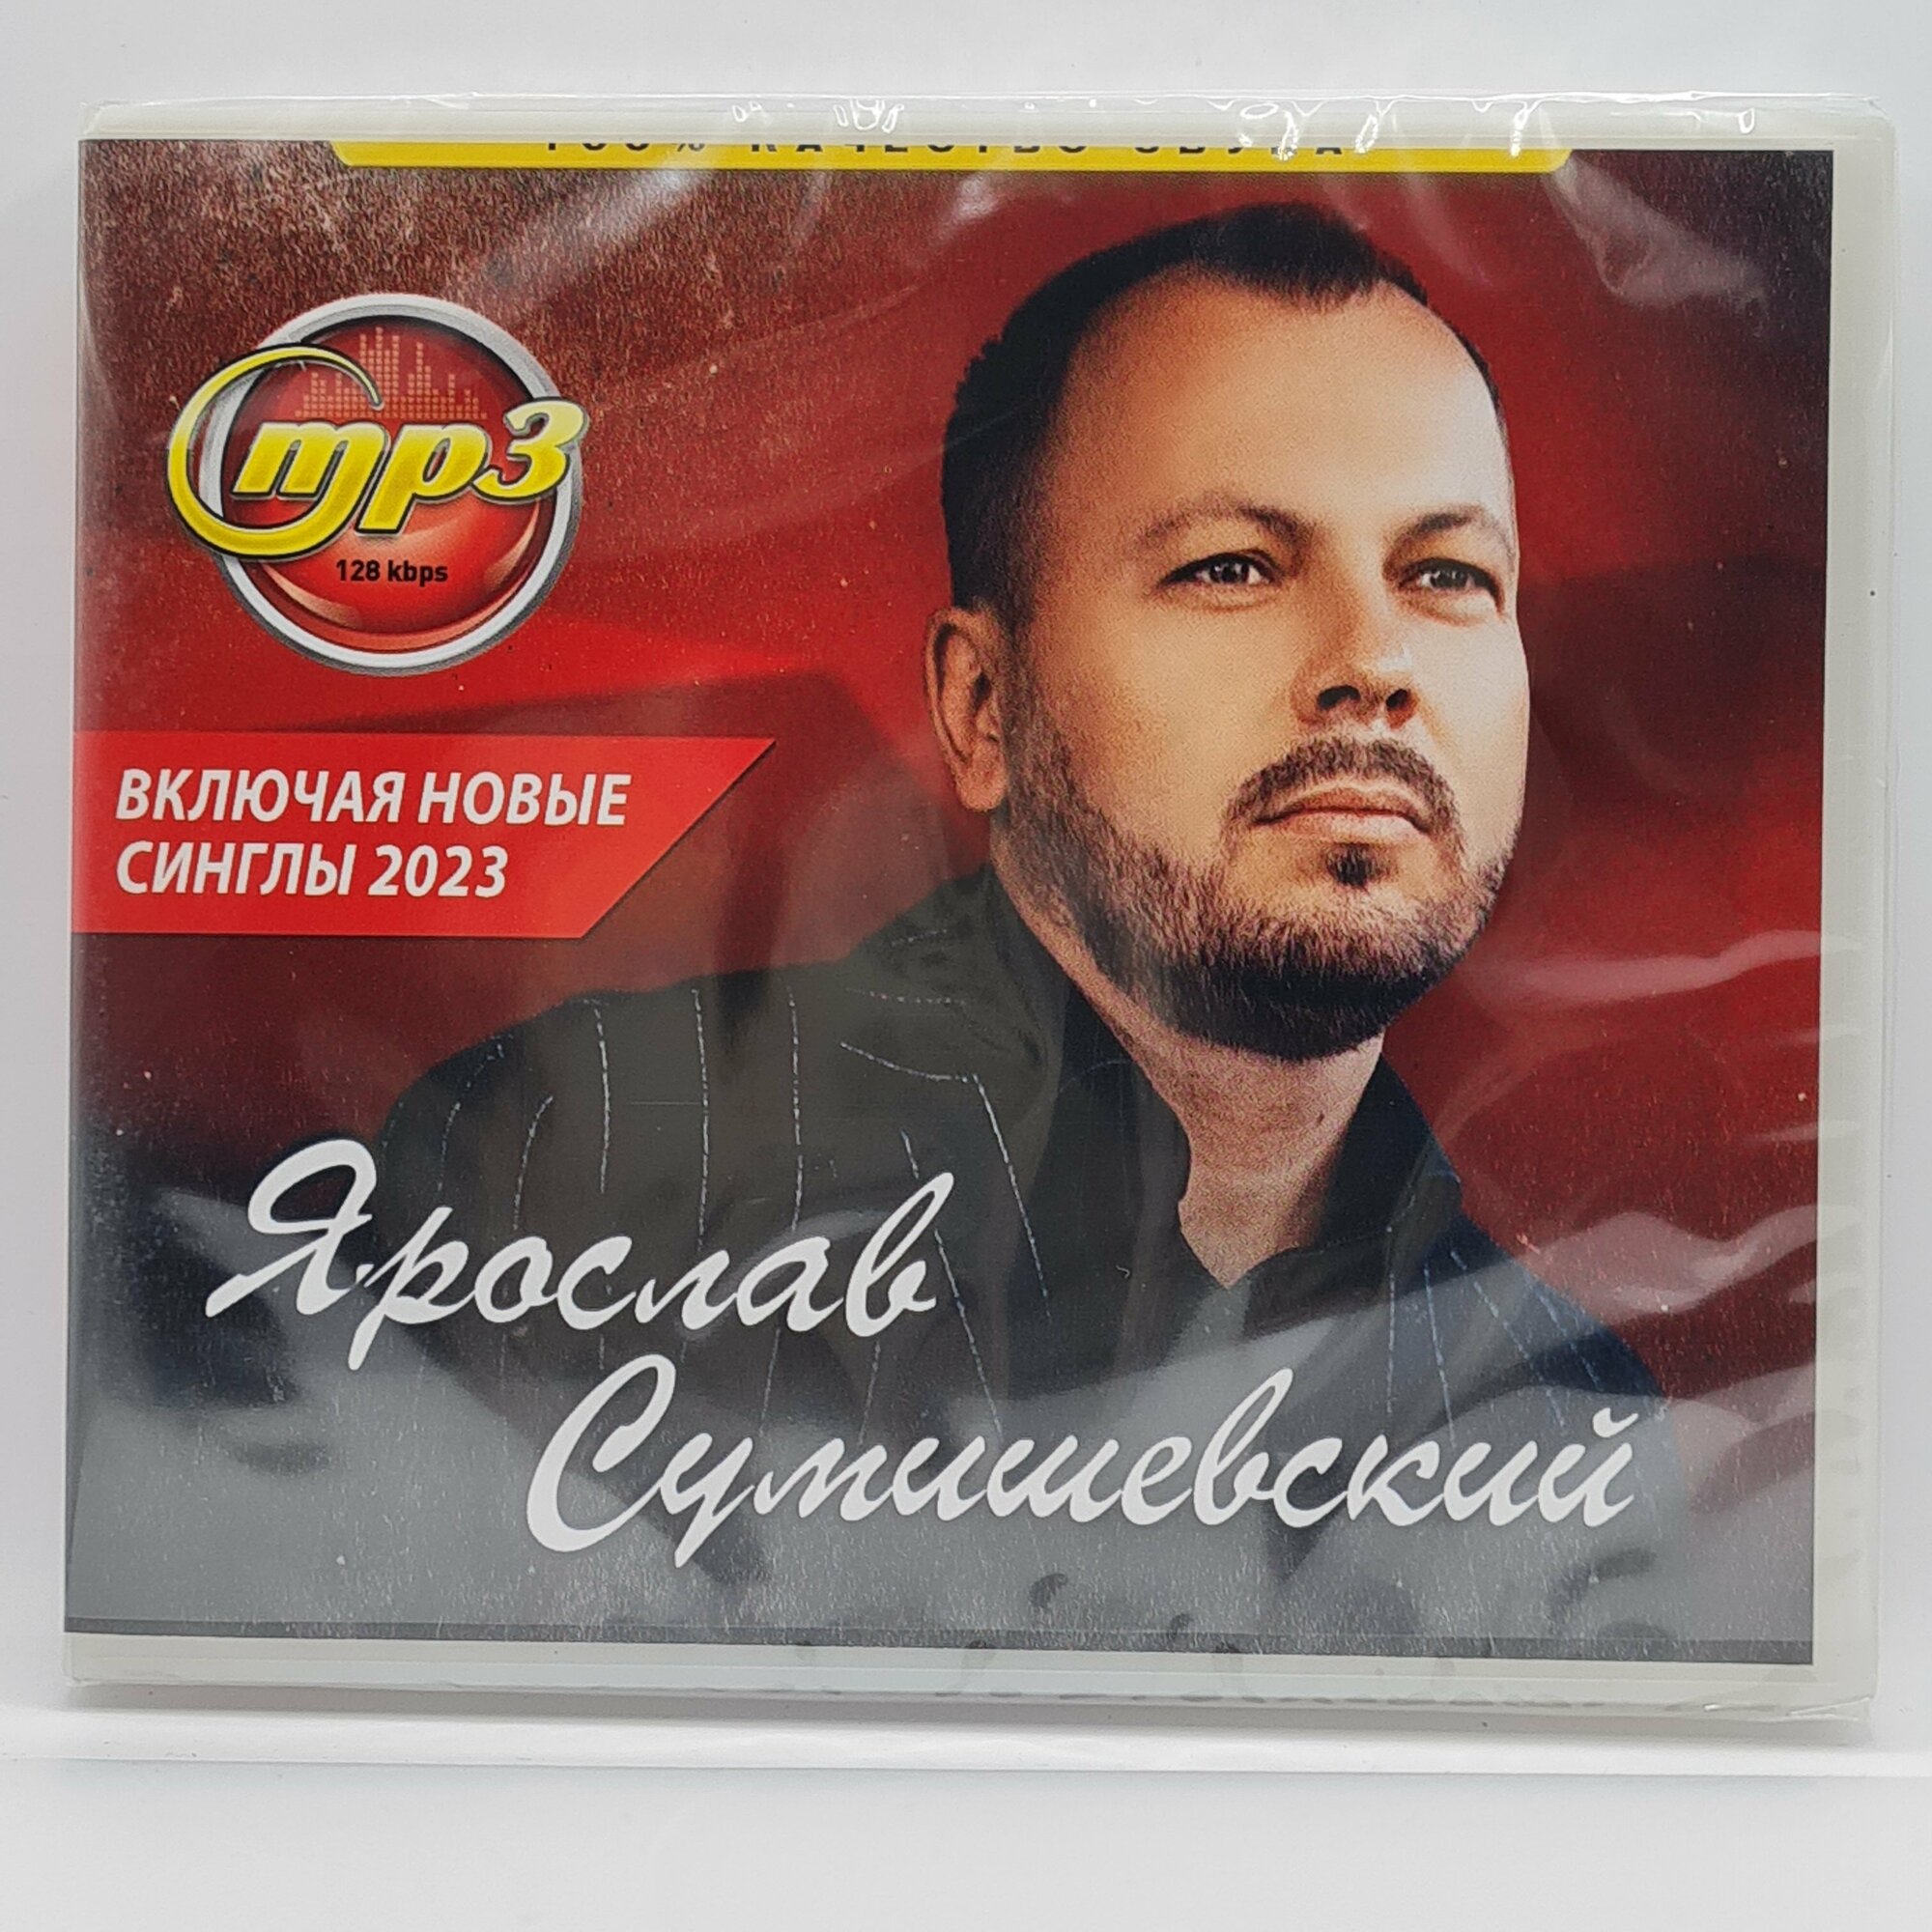 Ярослав Сумишевский (MP3)